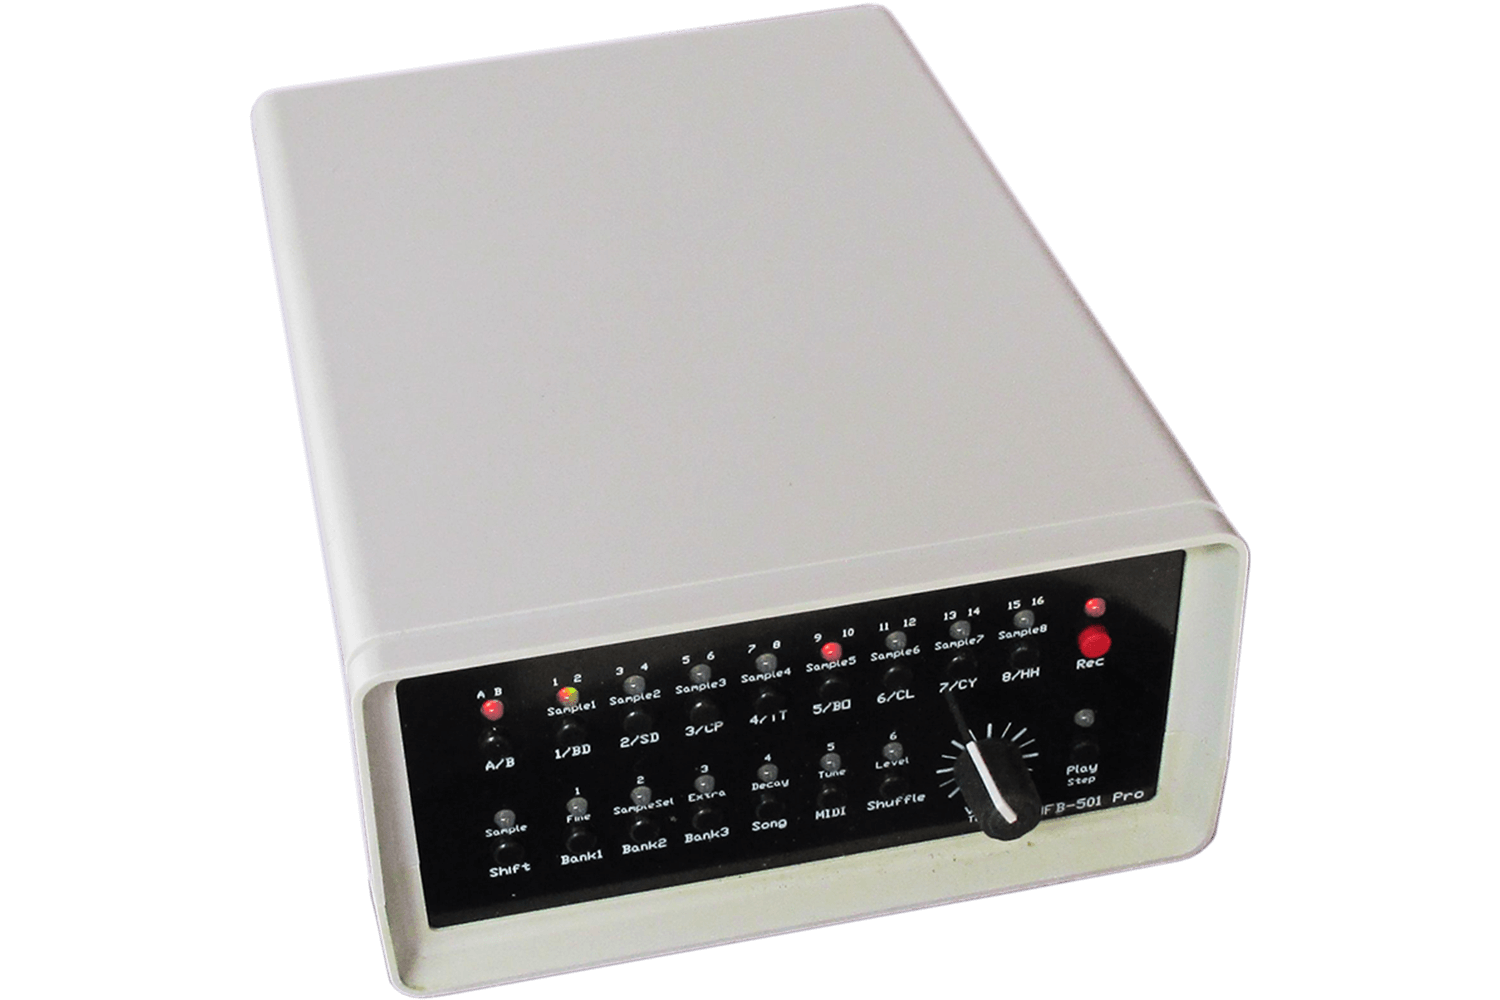 MFB-501 PRO - TechnoSynth Instruments